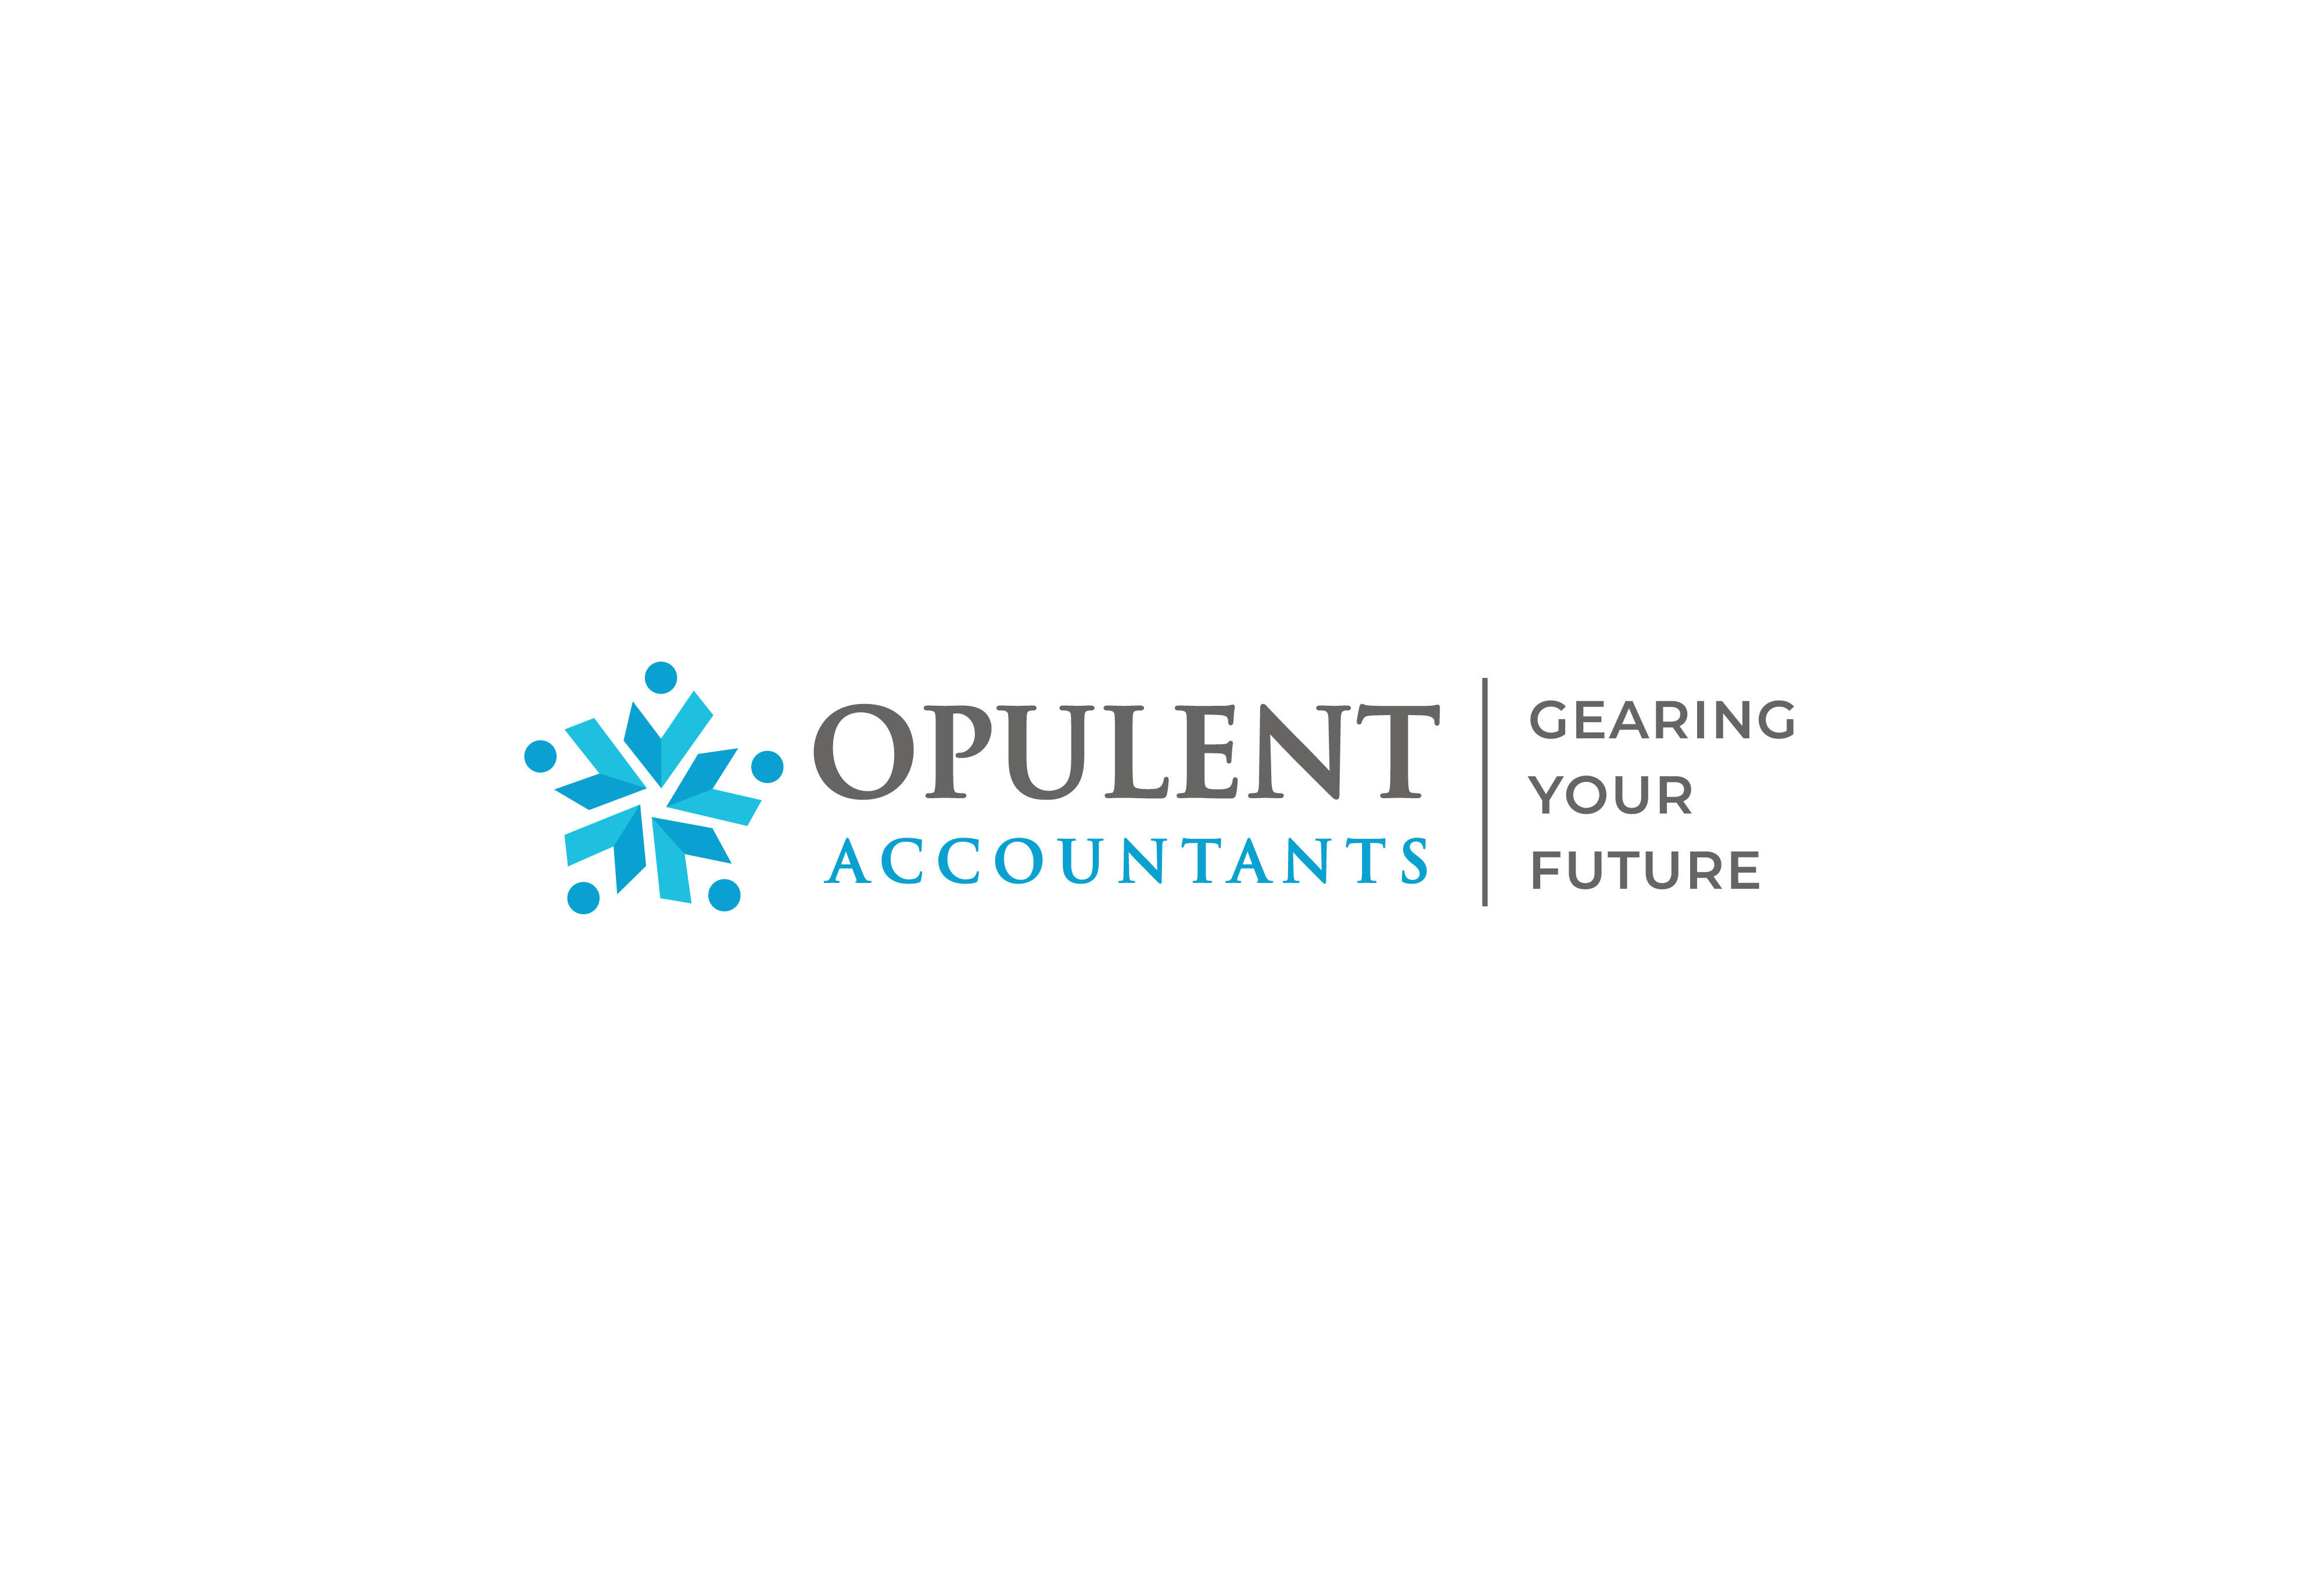 Opulent Accountants - Business Accountants and Tax Agents - Glen Waverley and Mount Waverley Mount Waverley (03) 8838 8726